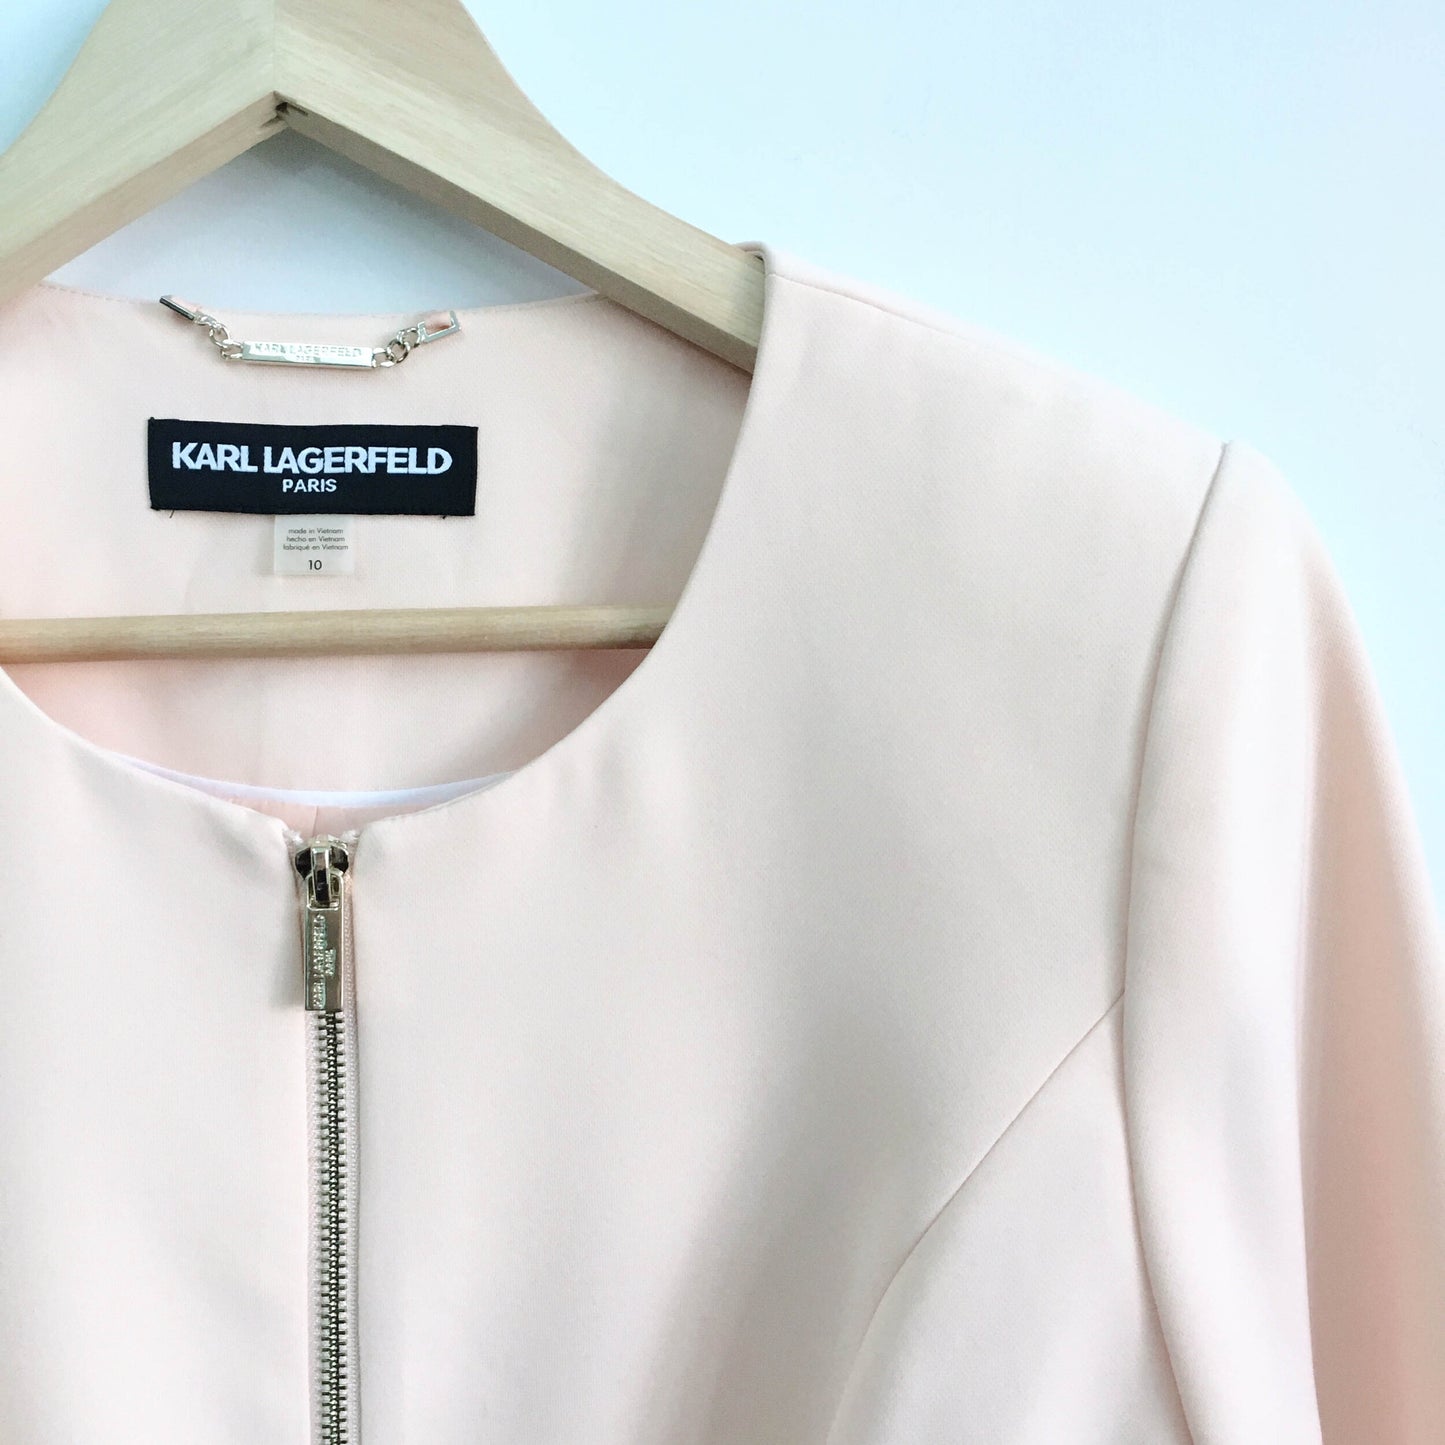 Karl Lagerfeld peach bow blazer - size 10